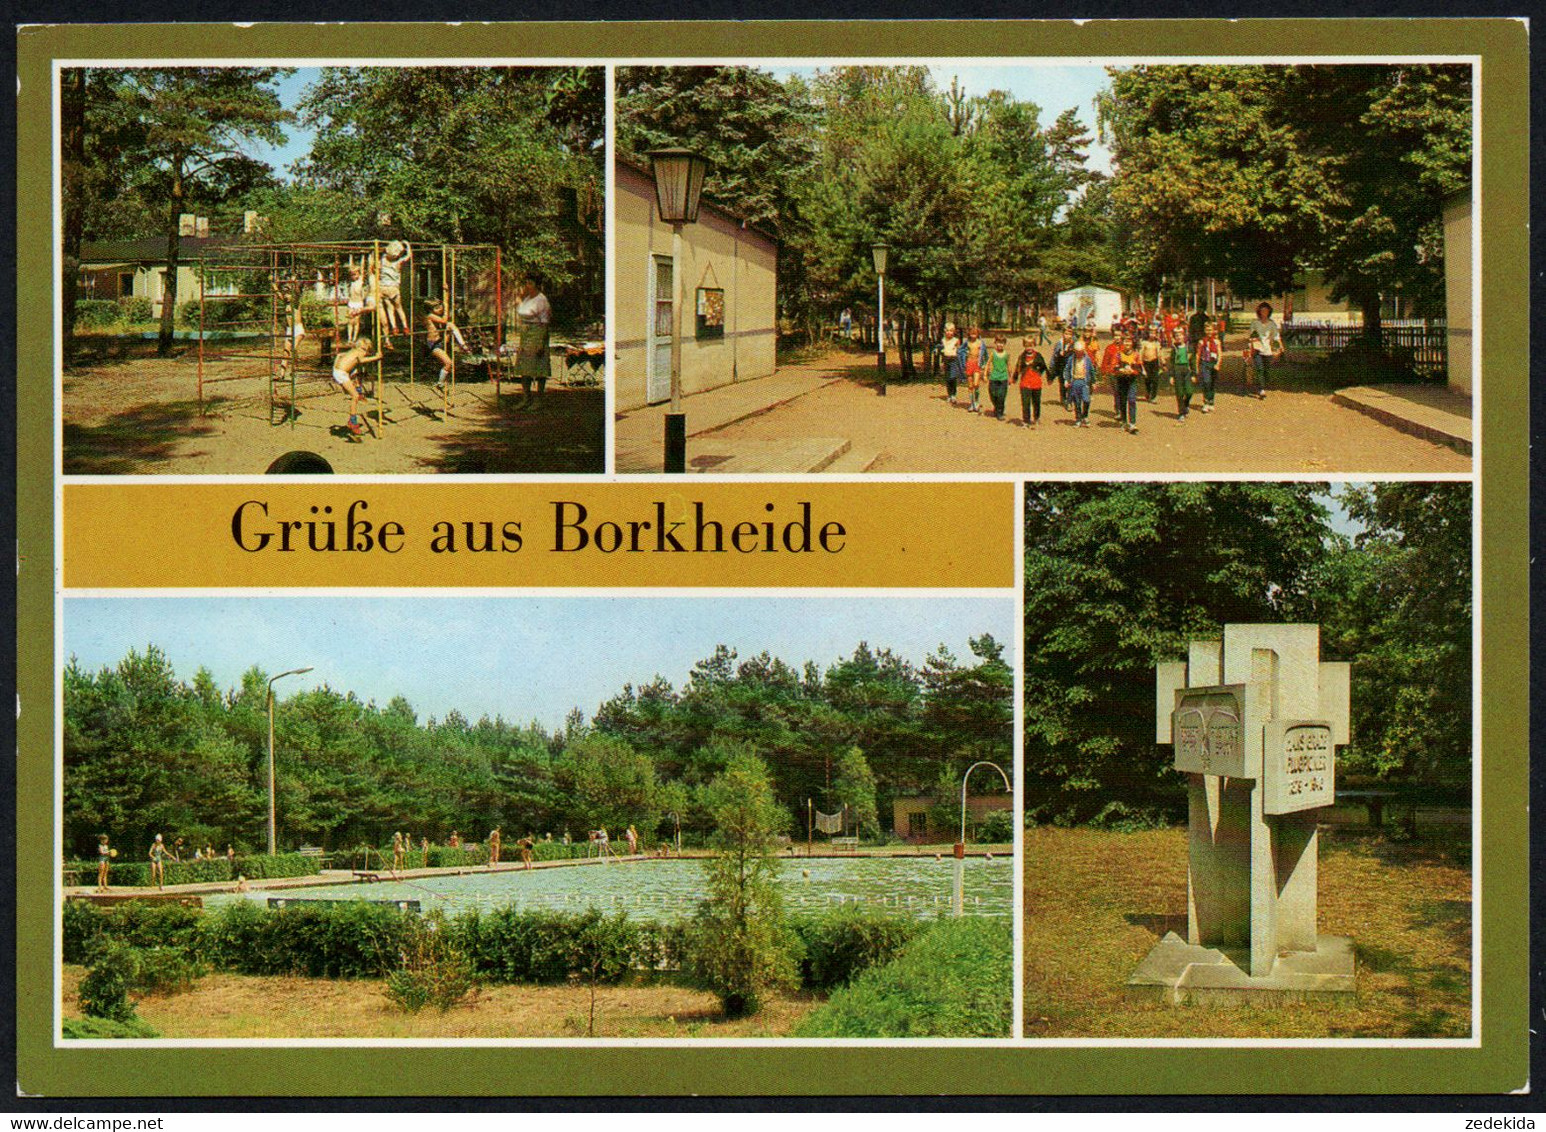 E7937 - TOP Borkheide Ferienlager VEB Industriemontage Mersburg - Bild Und Heimat Reichenbach - Belzig